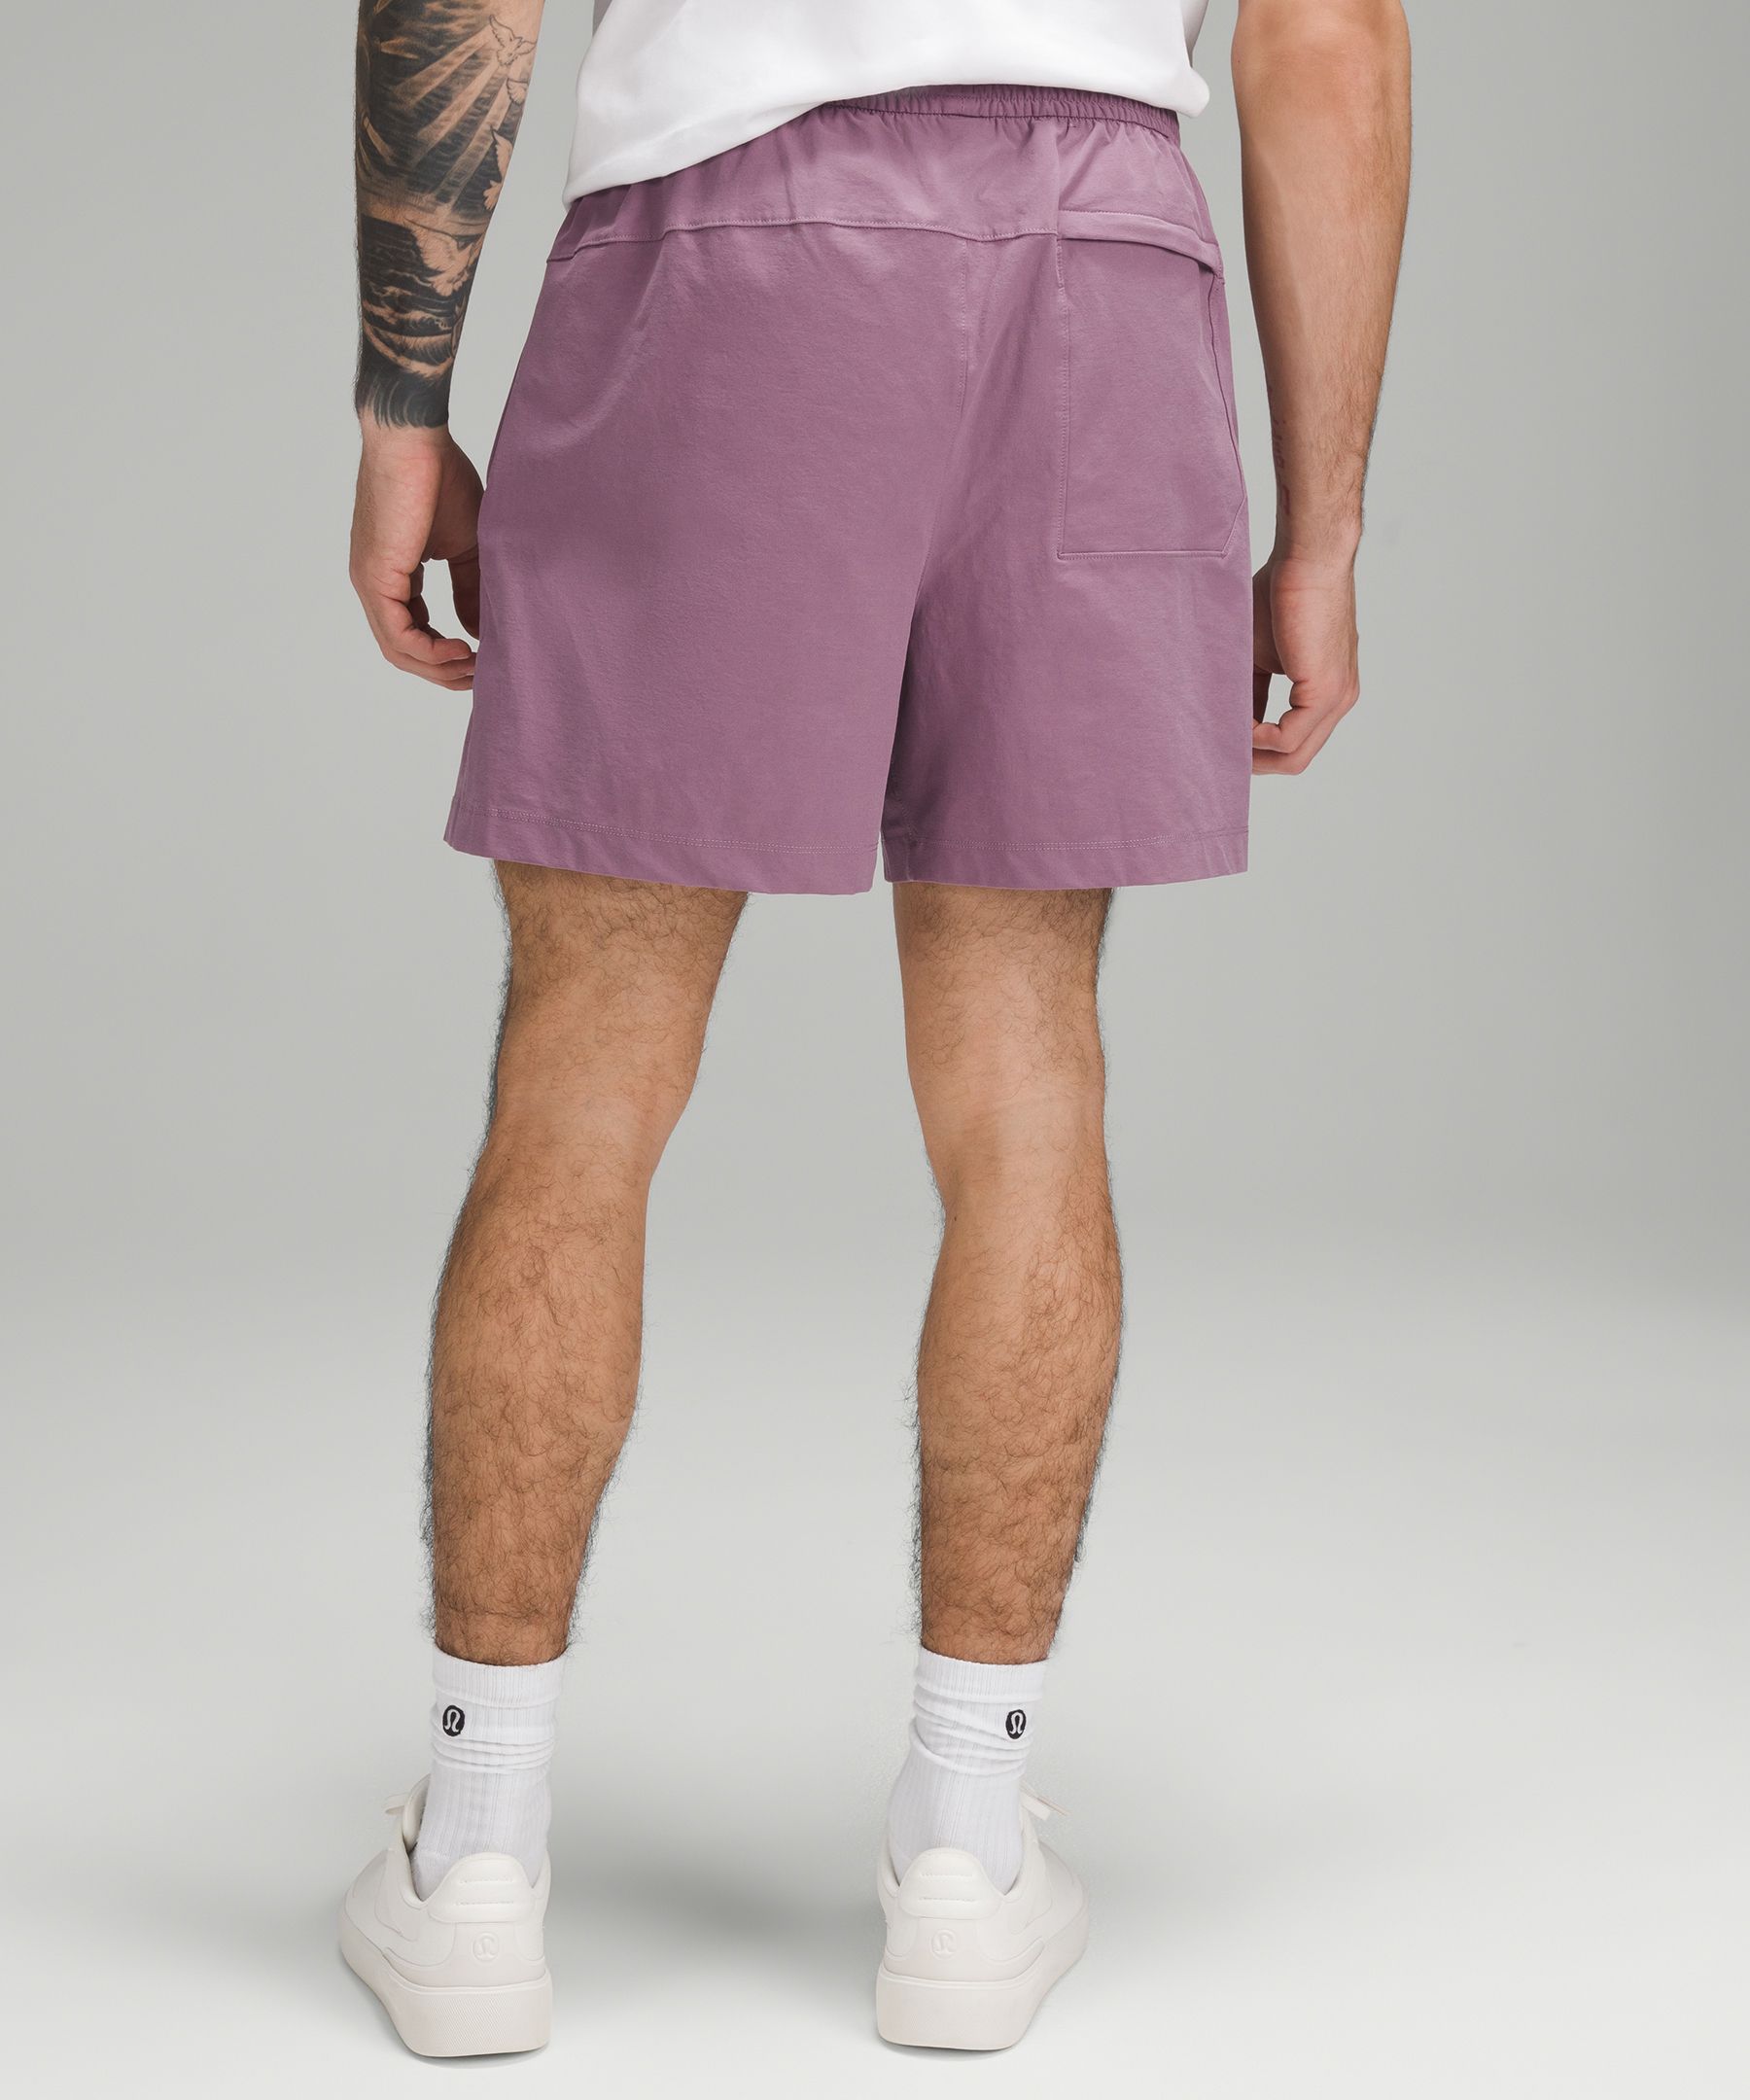 Lululemon Athletica Purple Shorts Size 4